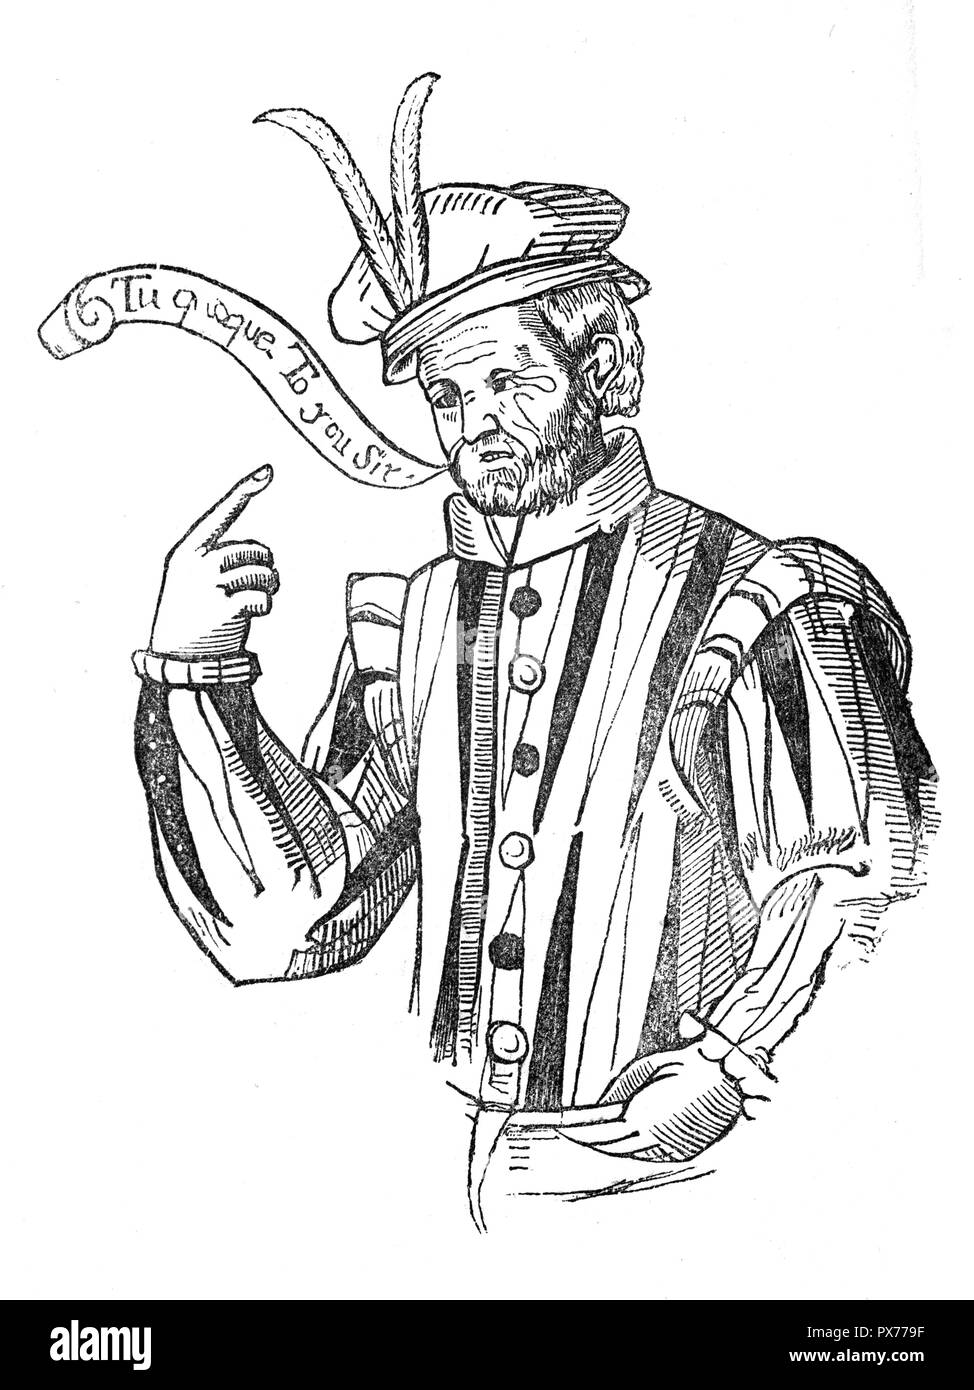 Robert Greene, (1558-1592, Londra), uno dei più popolari prosa inglese scrittori del seguito del XVI secolo e Shakespeare di maggior successo nel predecessore blank-versetto della commedia romantica. Egli è stato anche uno dei primi scrittori professionisti e tra le prime autobiographers inglese Foto Stock